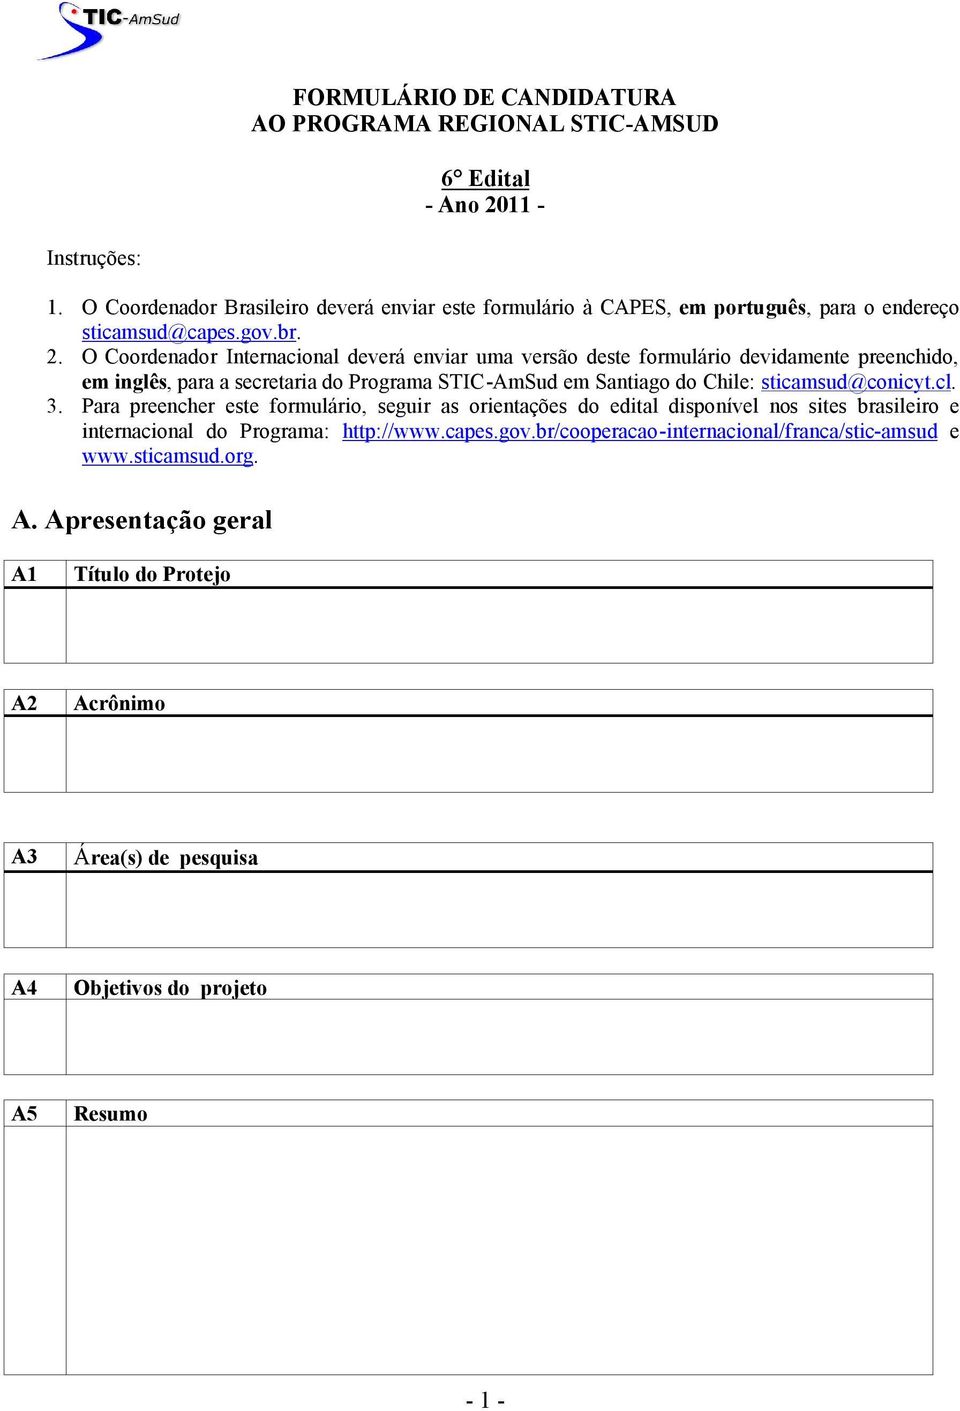 O Coordenador Internacional deverá enviar uma versão deste formulário devidamente preenchido, em inglês, para a secretaria do Programa STIC-AmSud em Santiago do Chile: